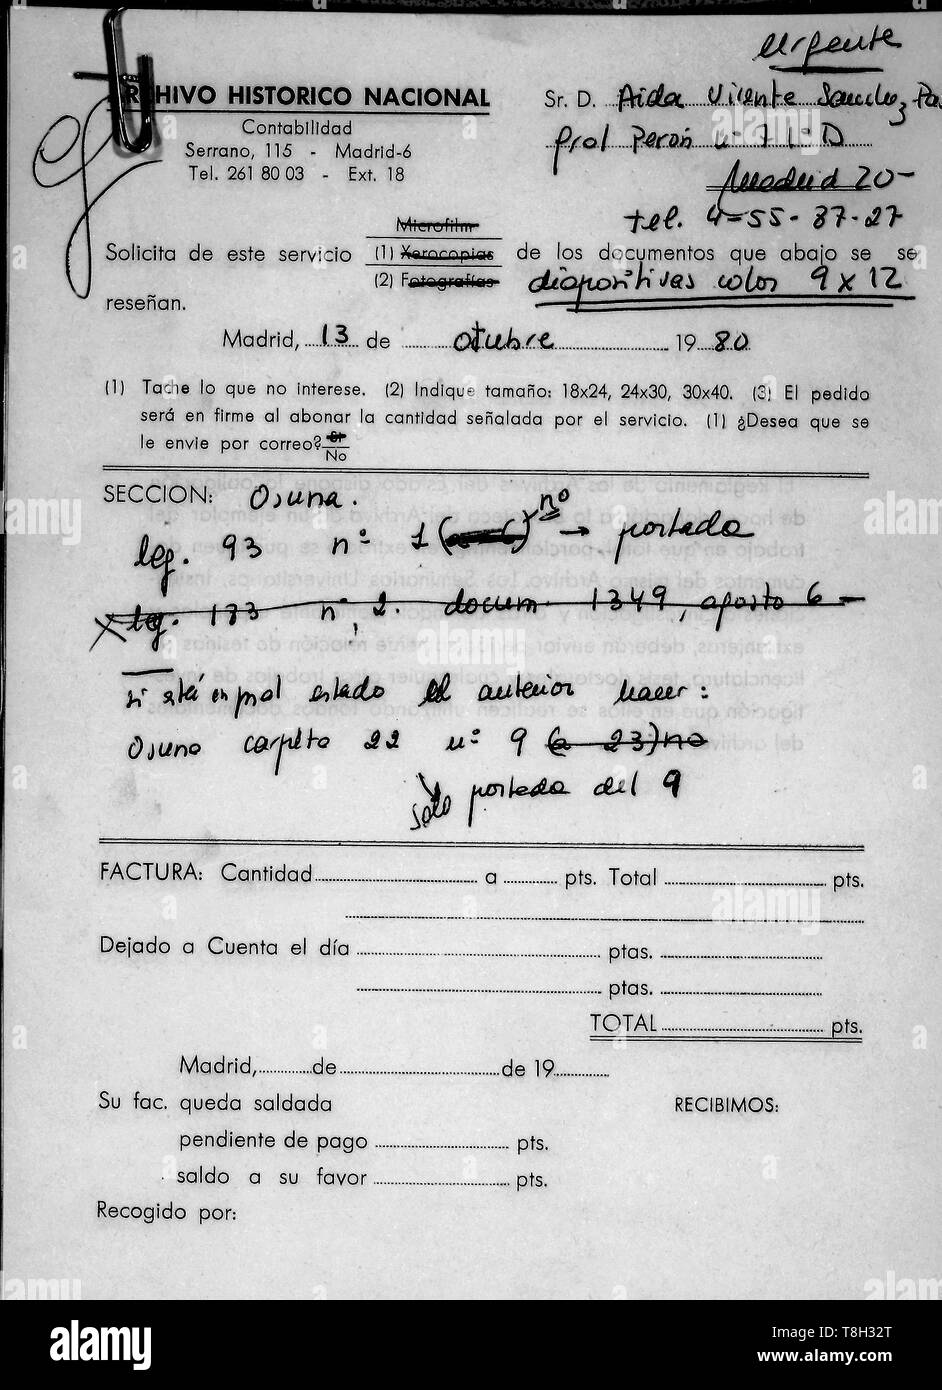 MANUSCRITO-LEGAJO DE OSUNA NUMERO 93. Location: ARCHIVO HISTORICO NACIONAL-COLECCION. MADRID. SPAIN. Stock Photo